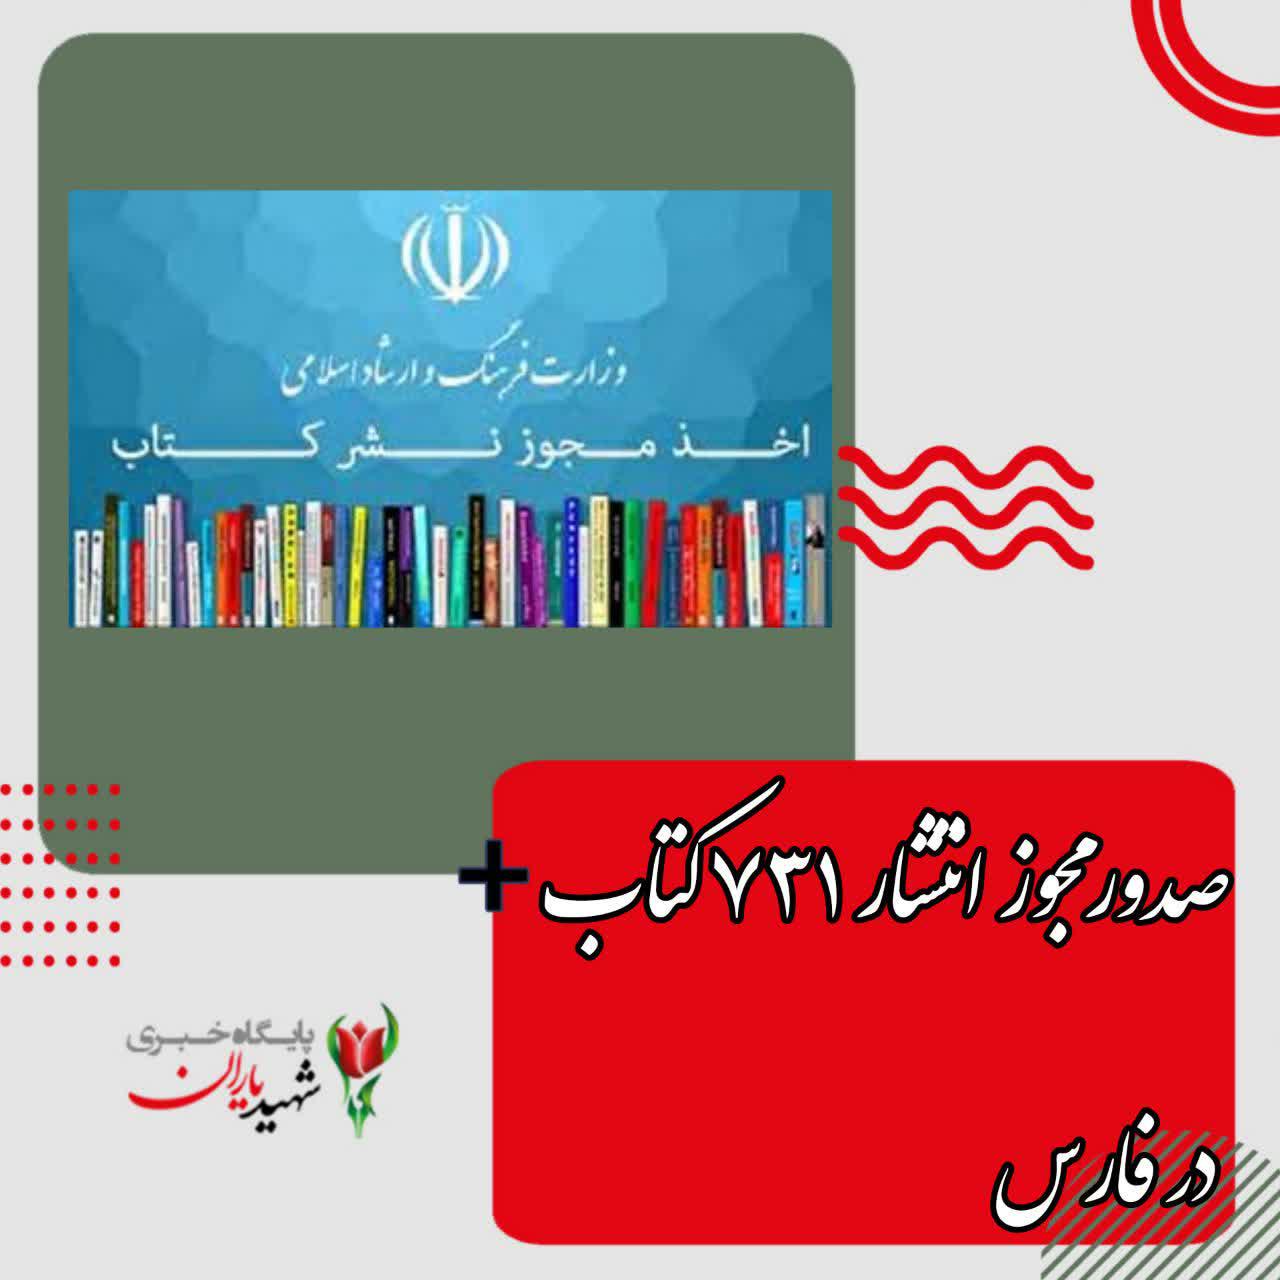 صدورمجوز انتشار ۷۳۱ کتاب در فارس